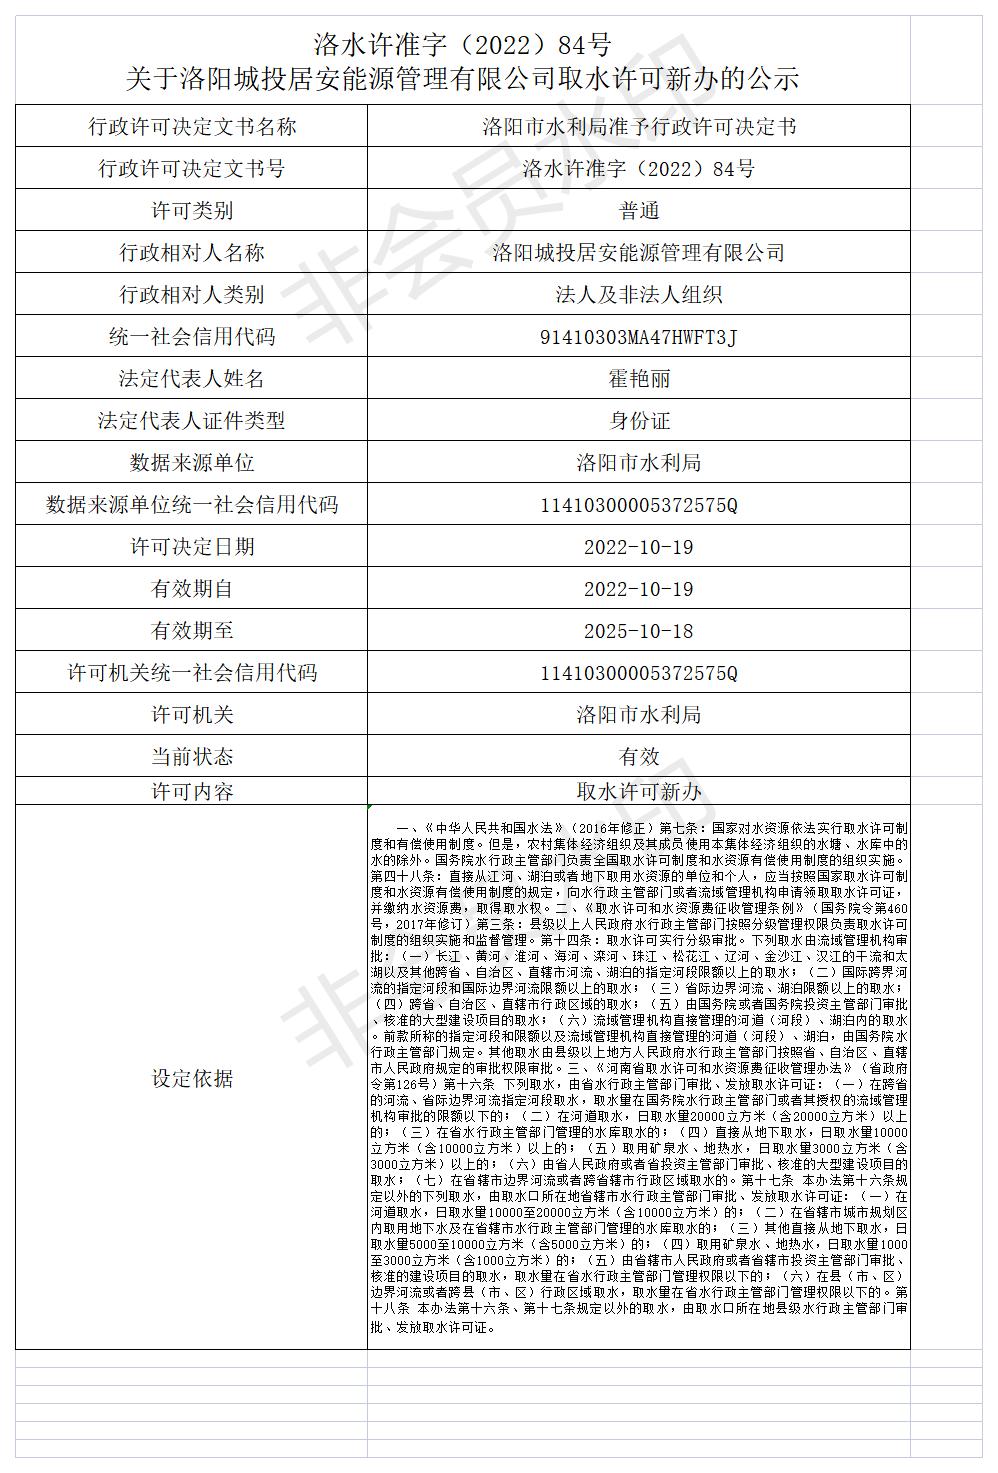 洛水许准字（2022）84号 关于洛阳城投居安能源管理有限公司取水许可新办的公示(图1)